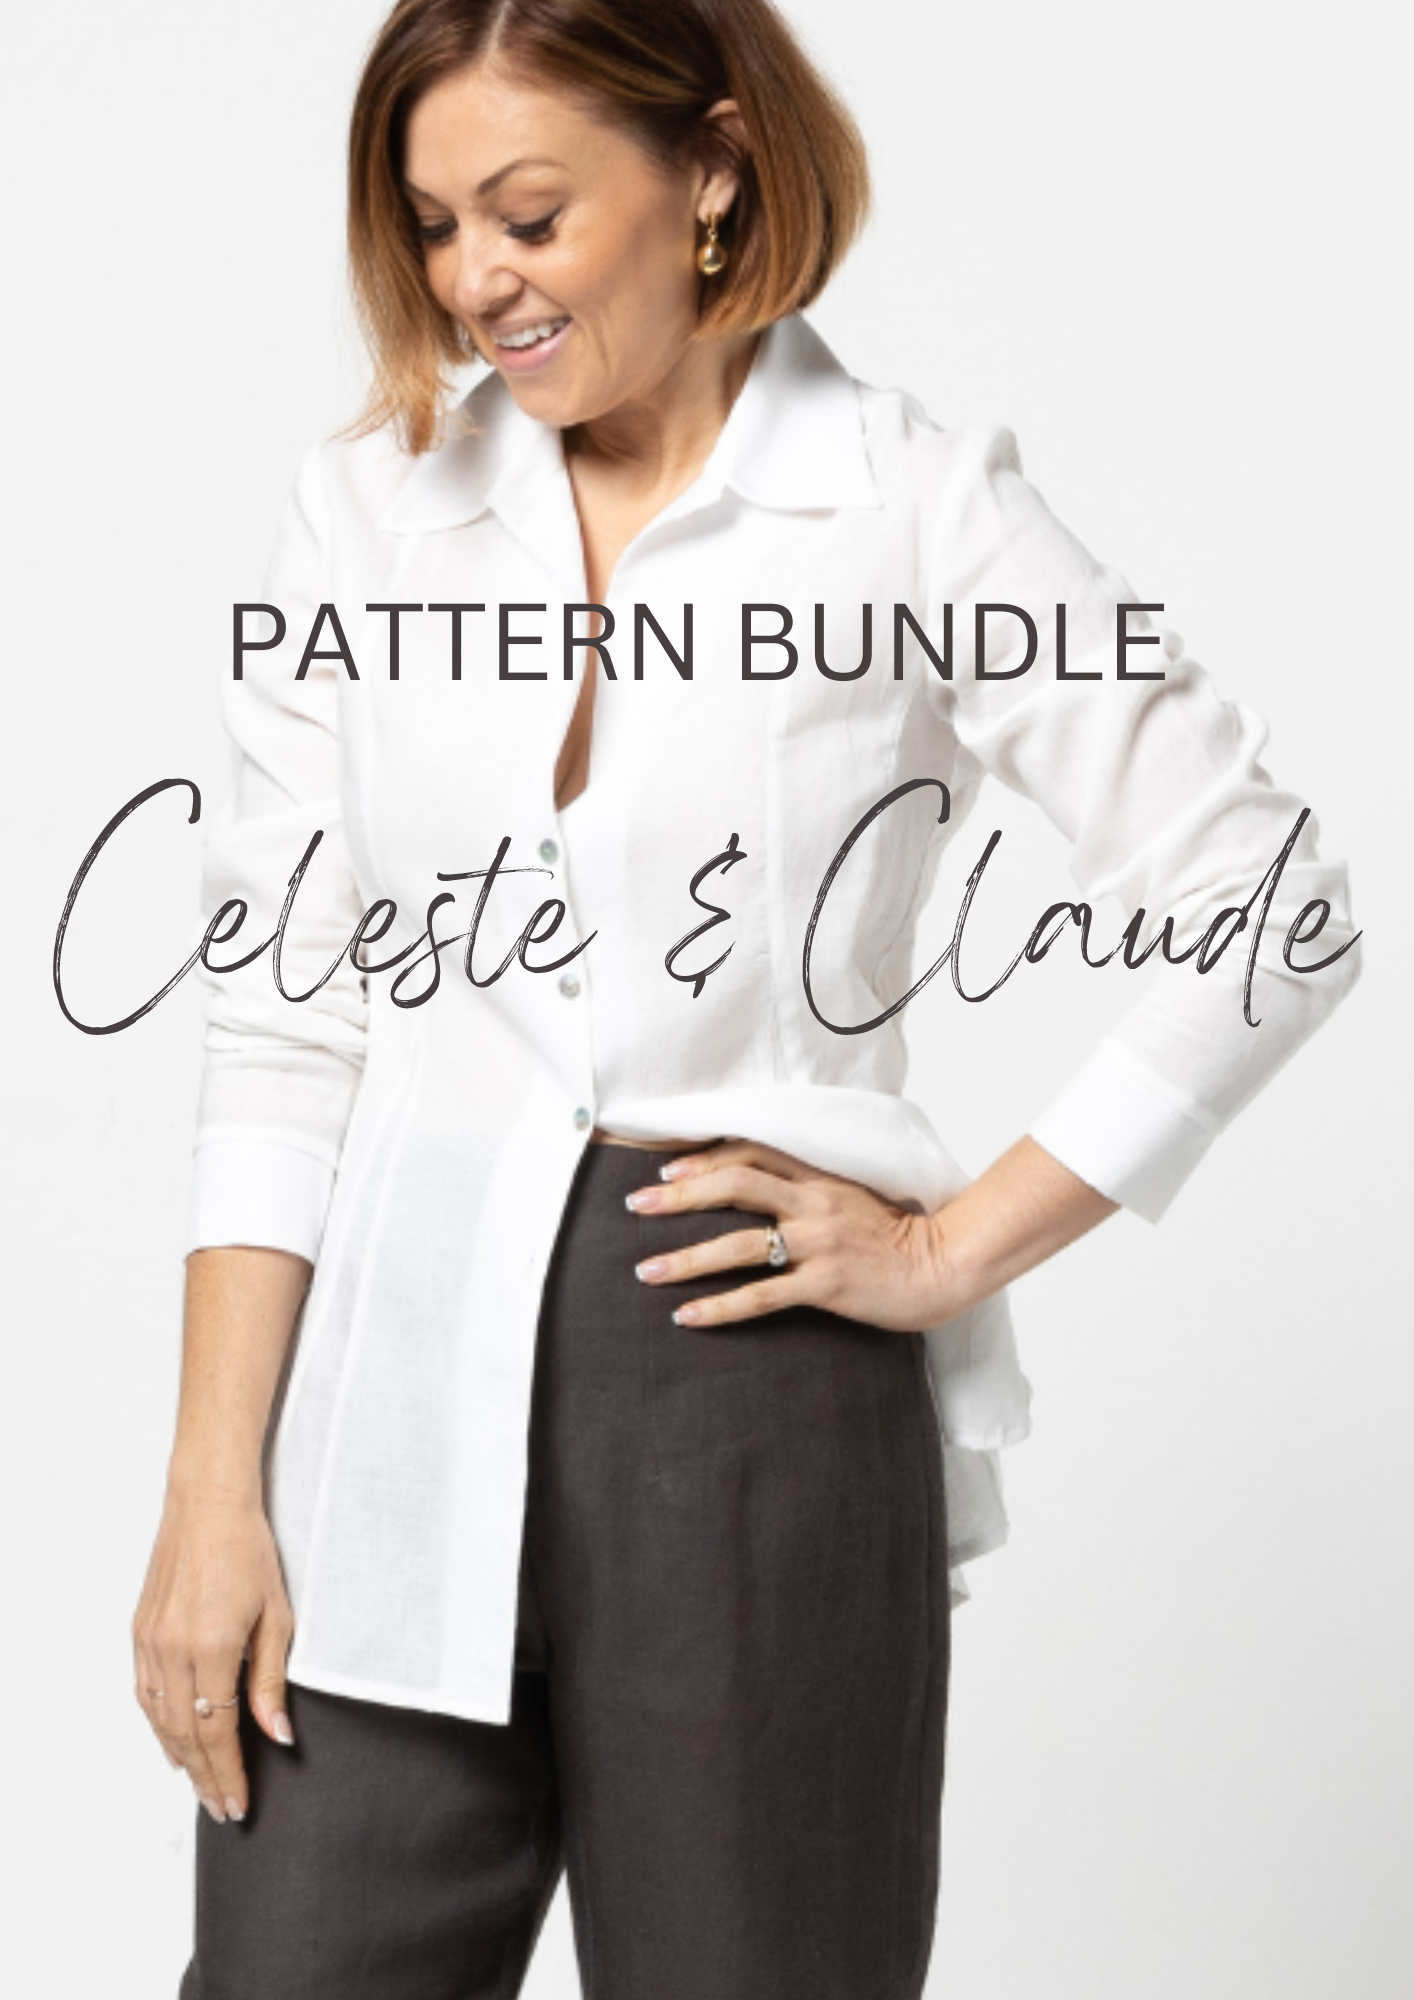 Pattern bundle - Celeste and Claude